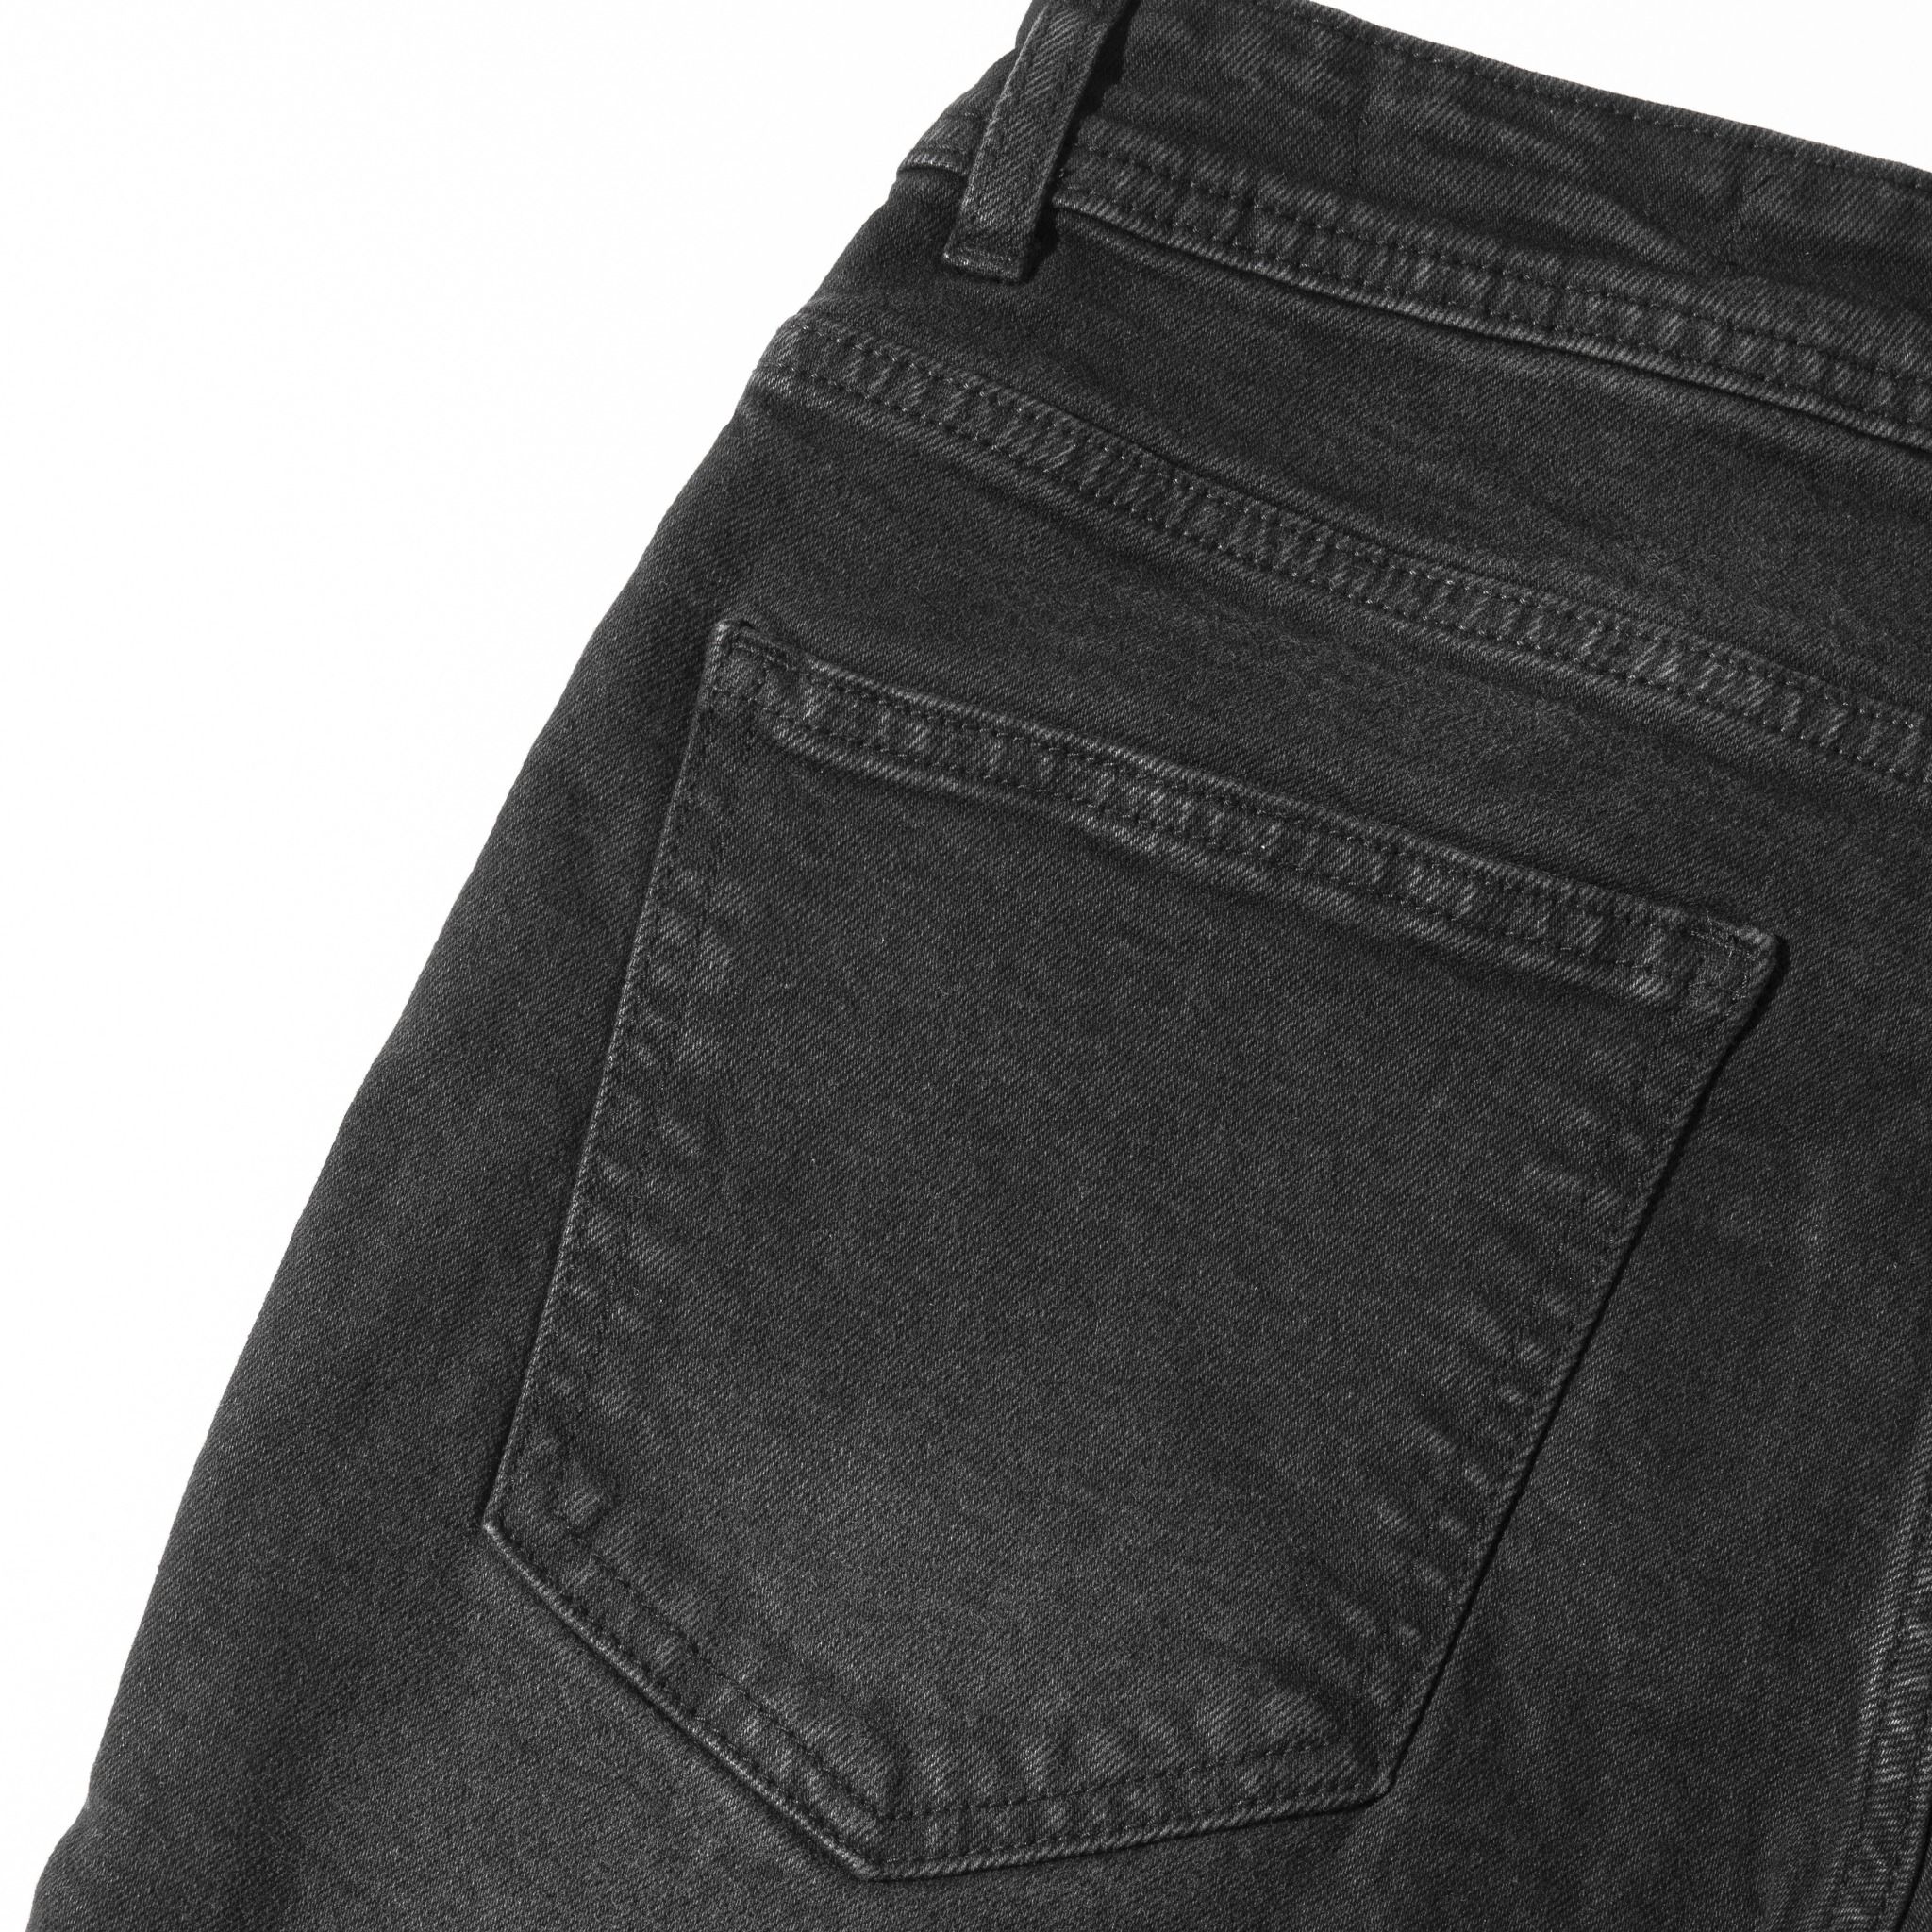  Quần Shorts Jeans Simwood Denim Dark Black 1548 